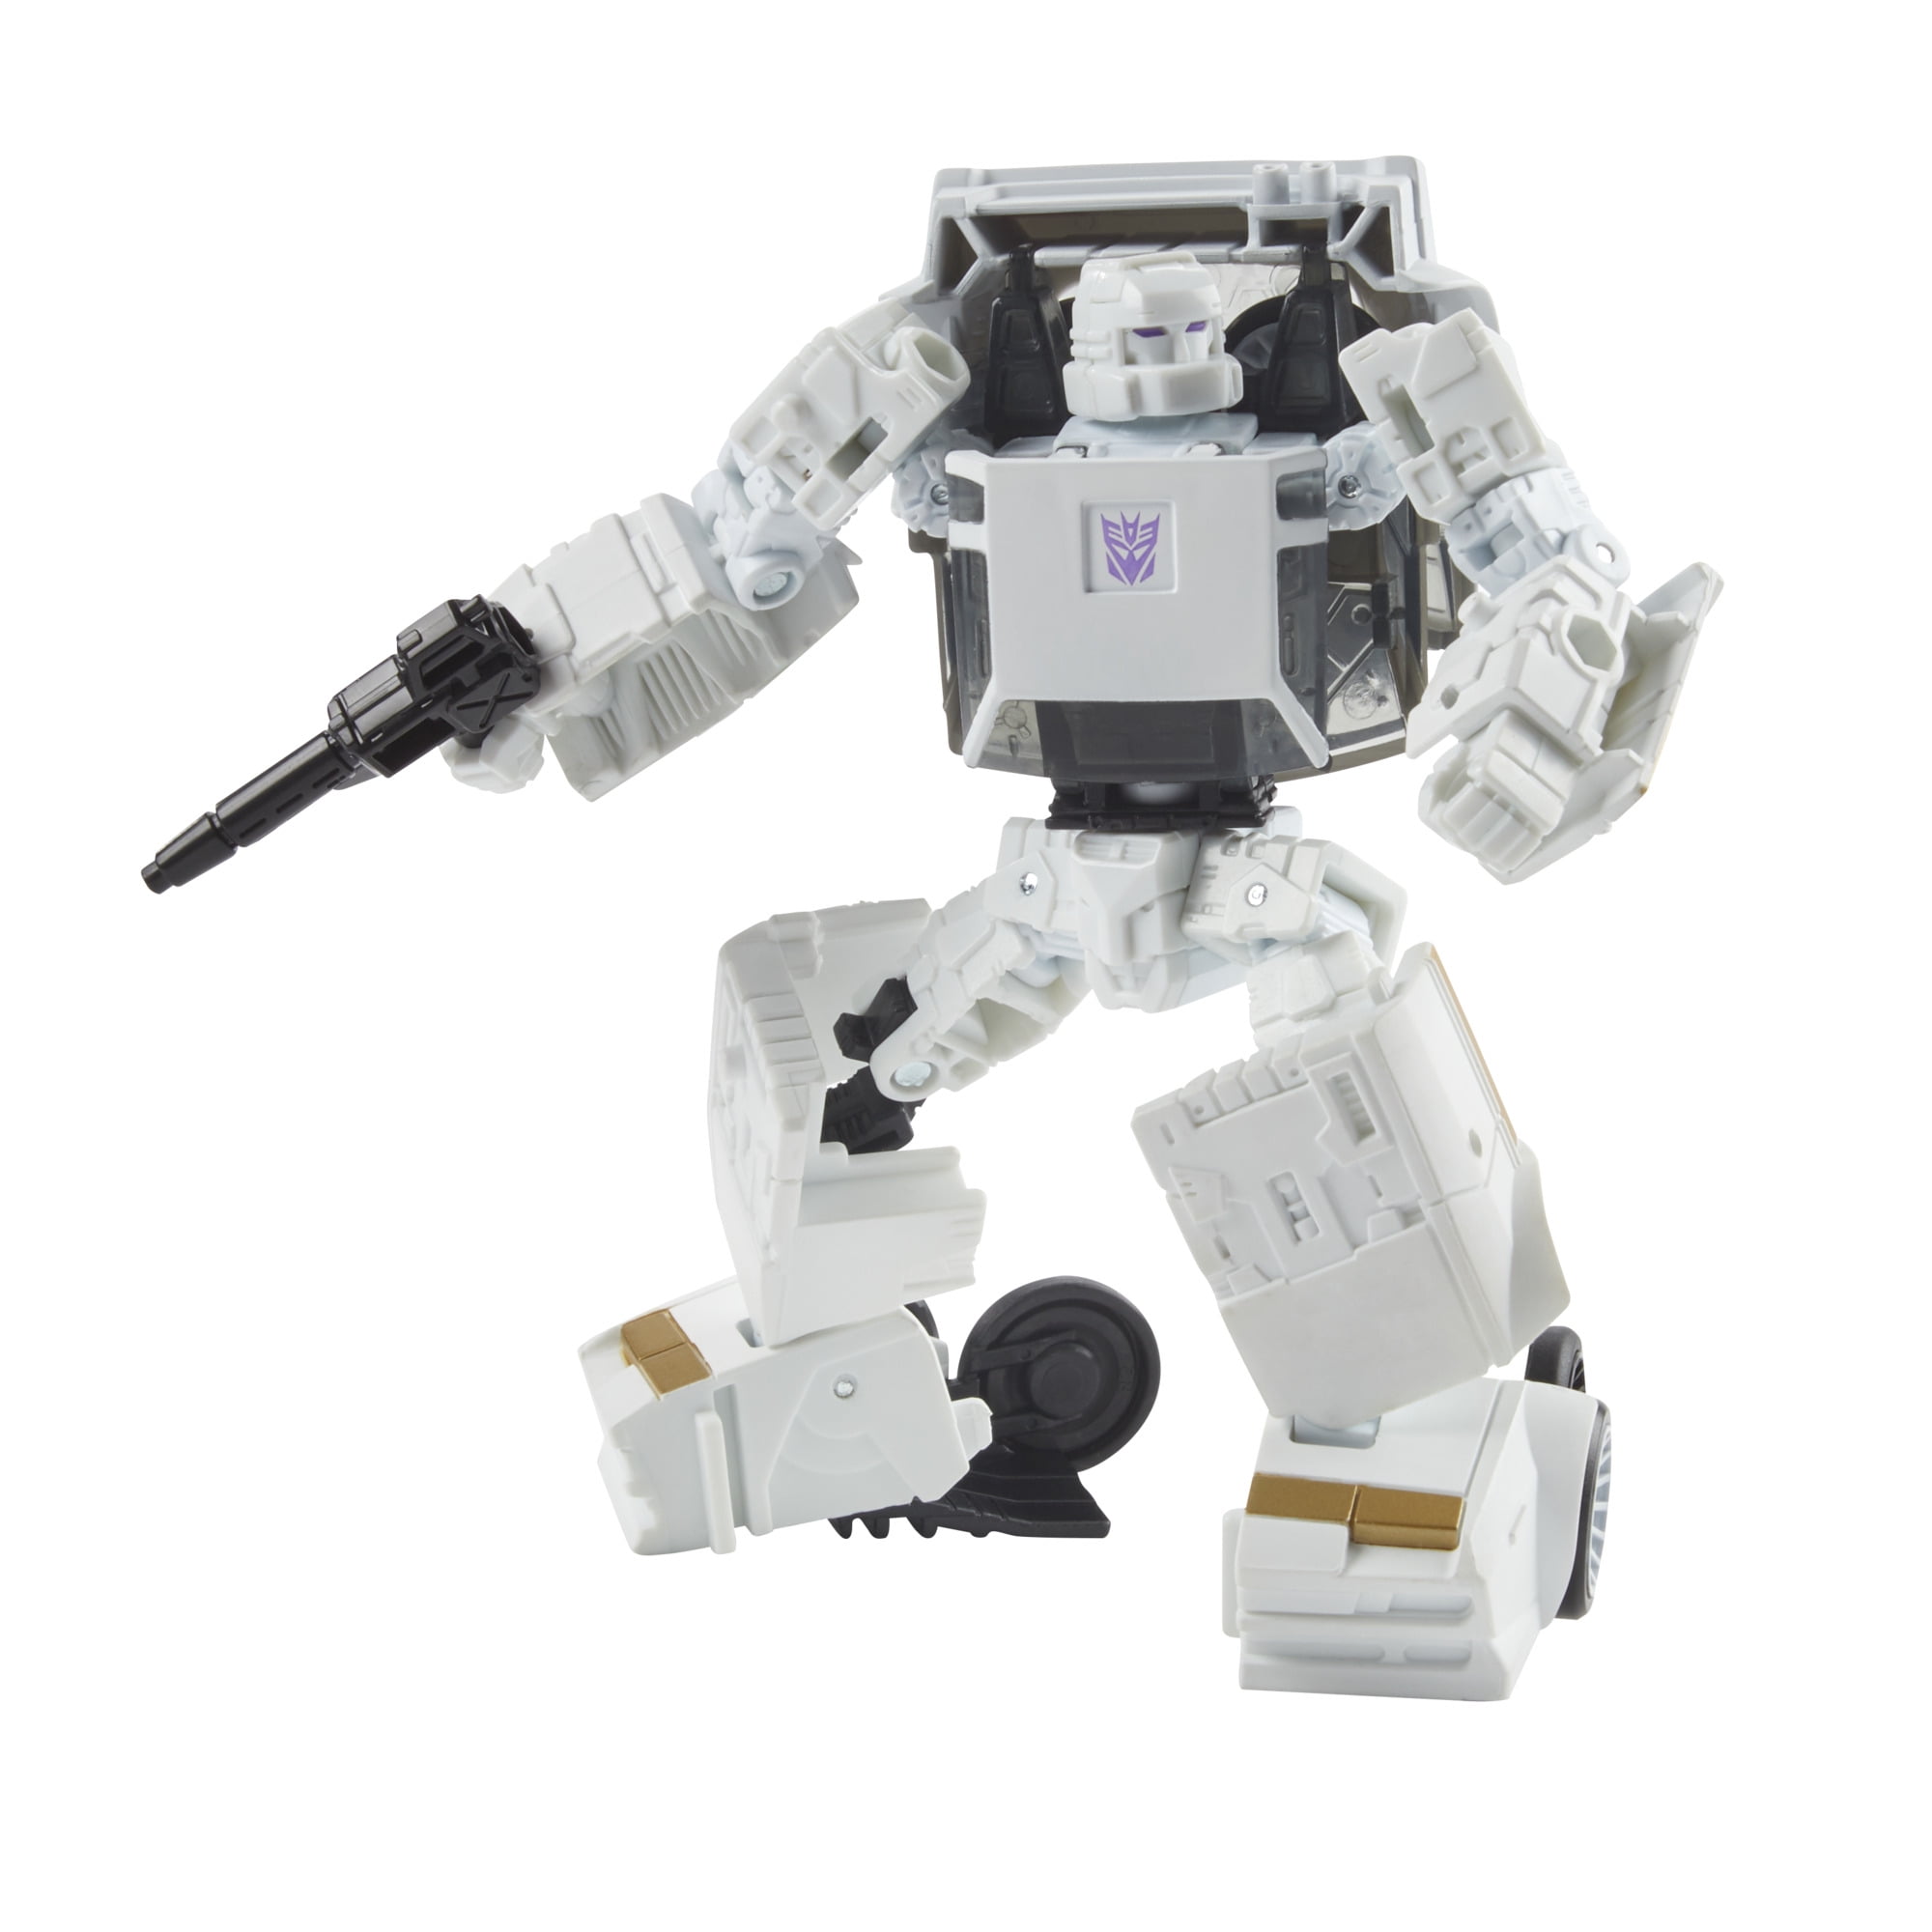 E74635L00 Hasbro Transformers Earthrise War for Cybertron Deluxe Bluestreak Action Figure for sale online 